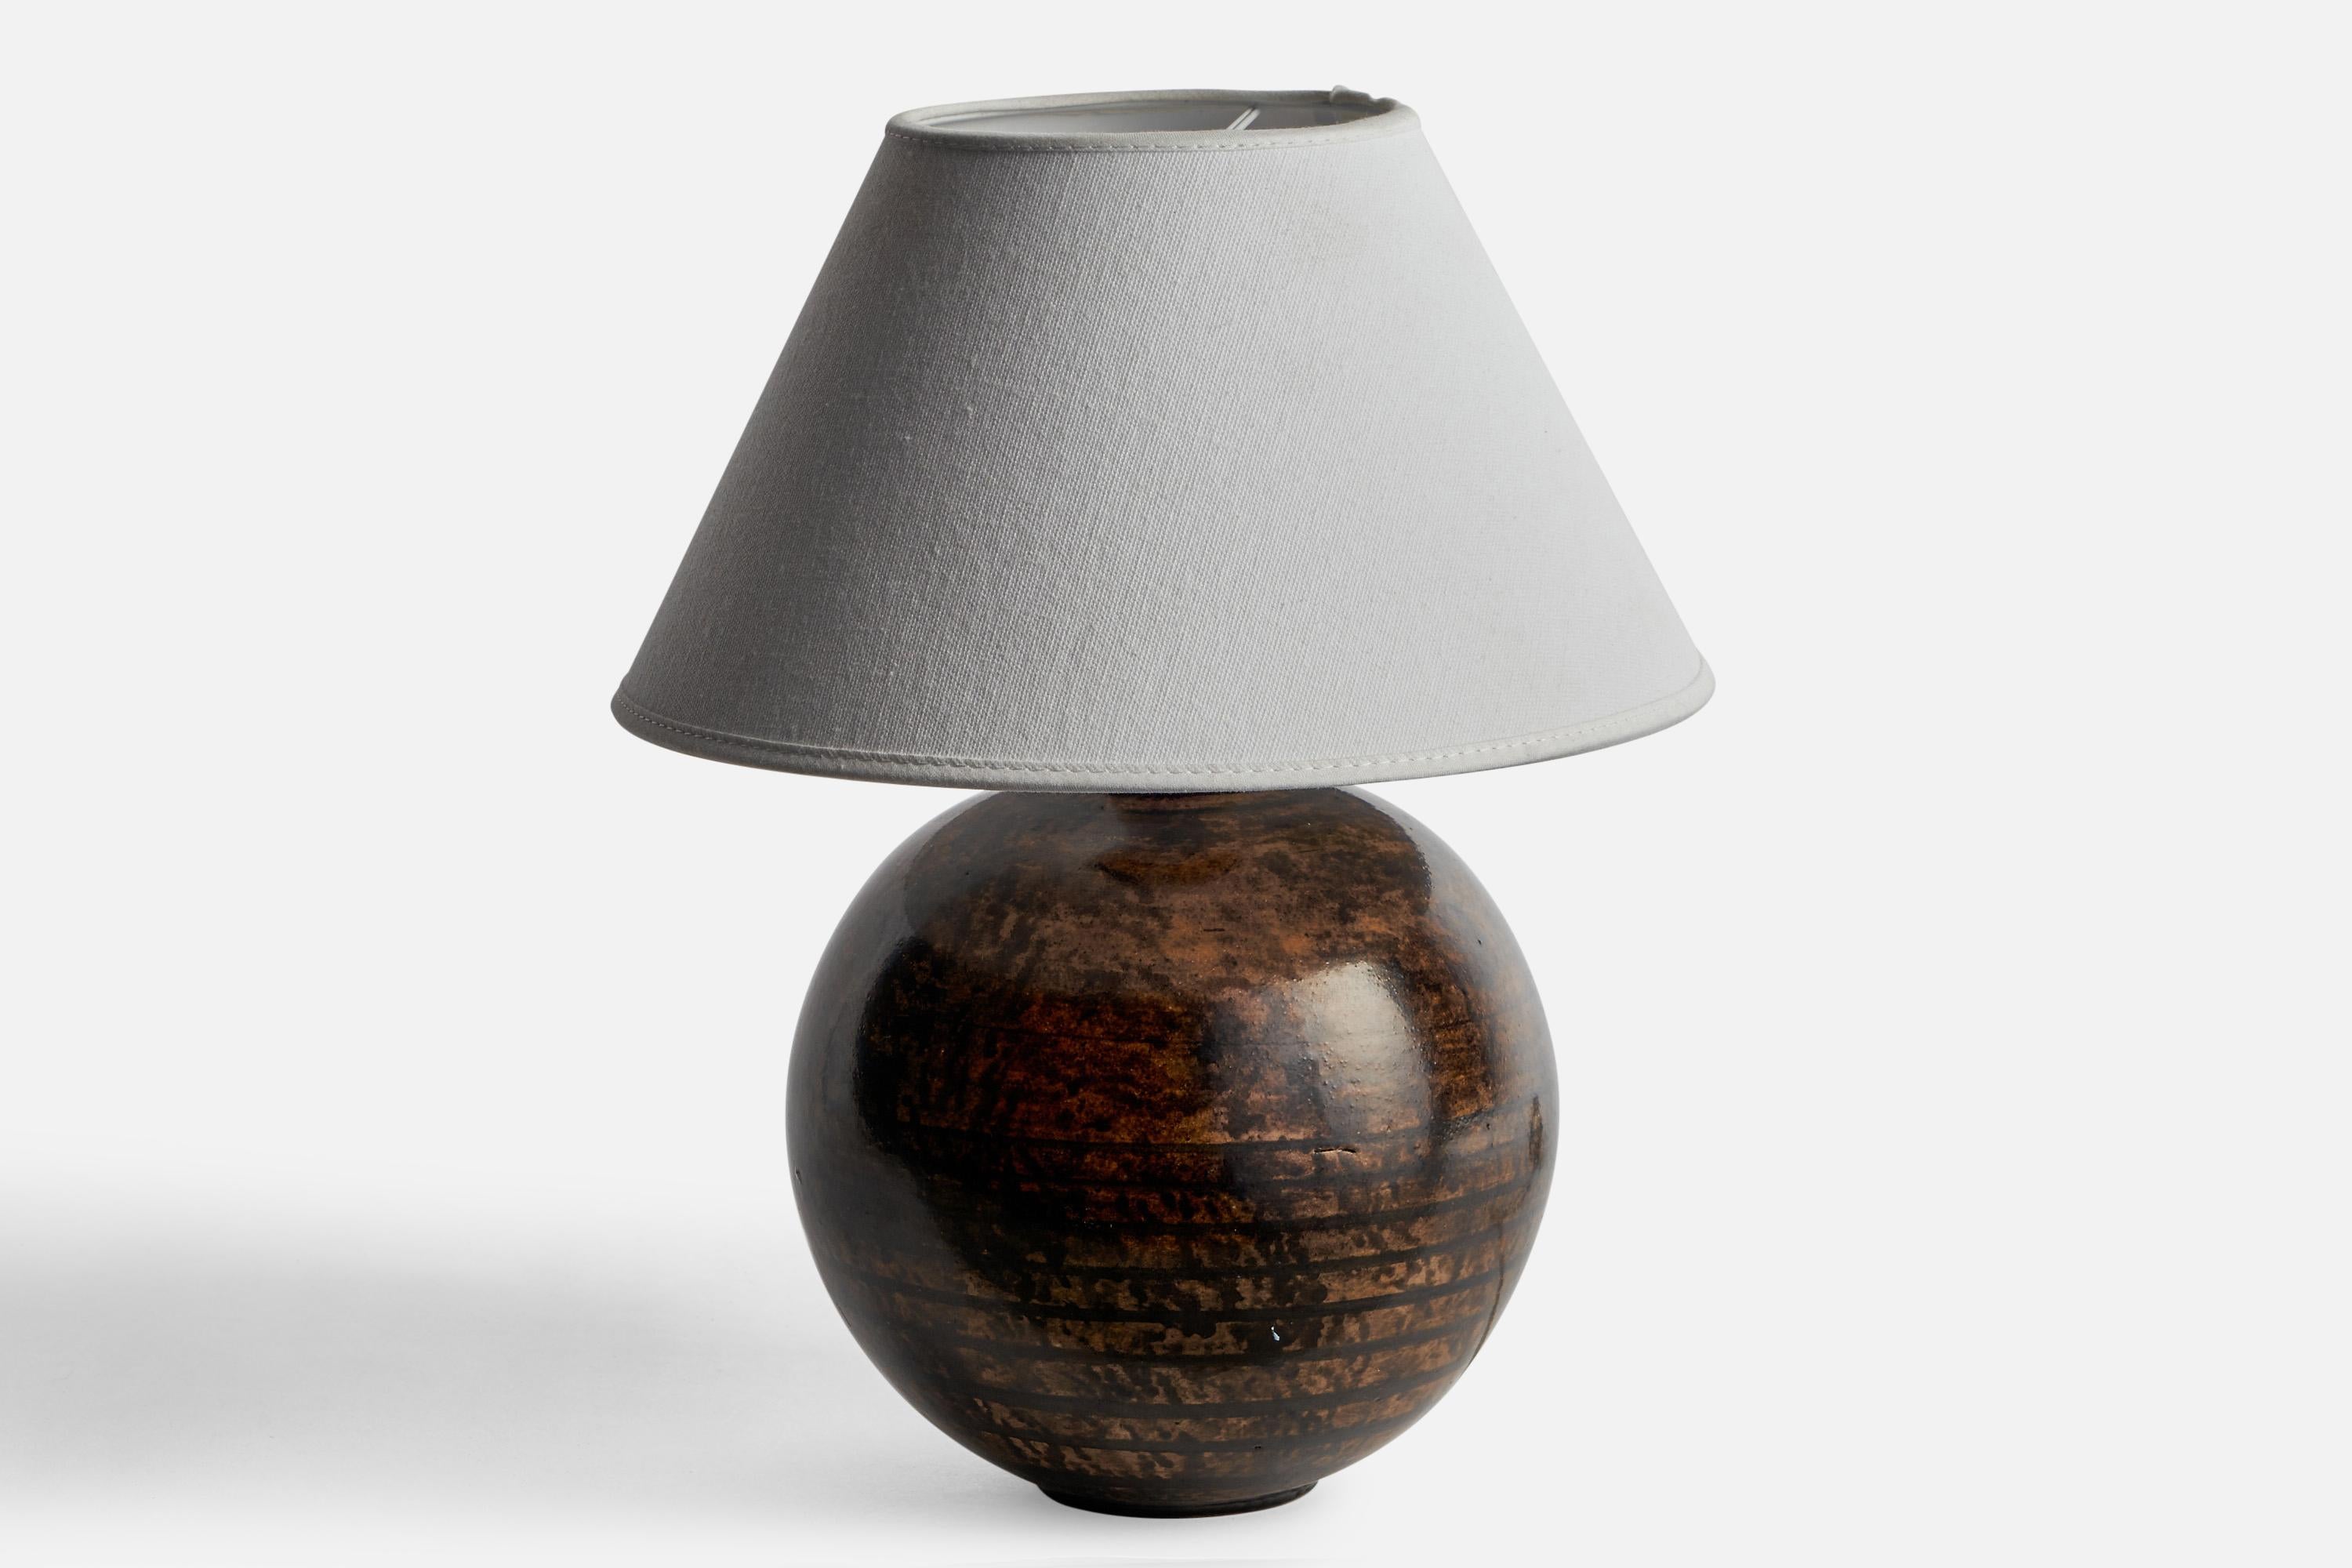 Lampe de table en céramique émaillée brune et noire, conçue et produite en Suède, années 1930.

Dimensions de la lampe (pouces) : 8.95